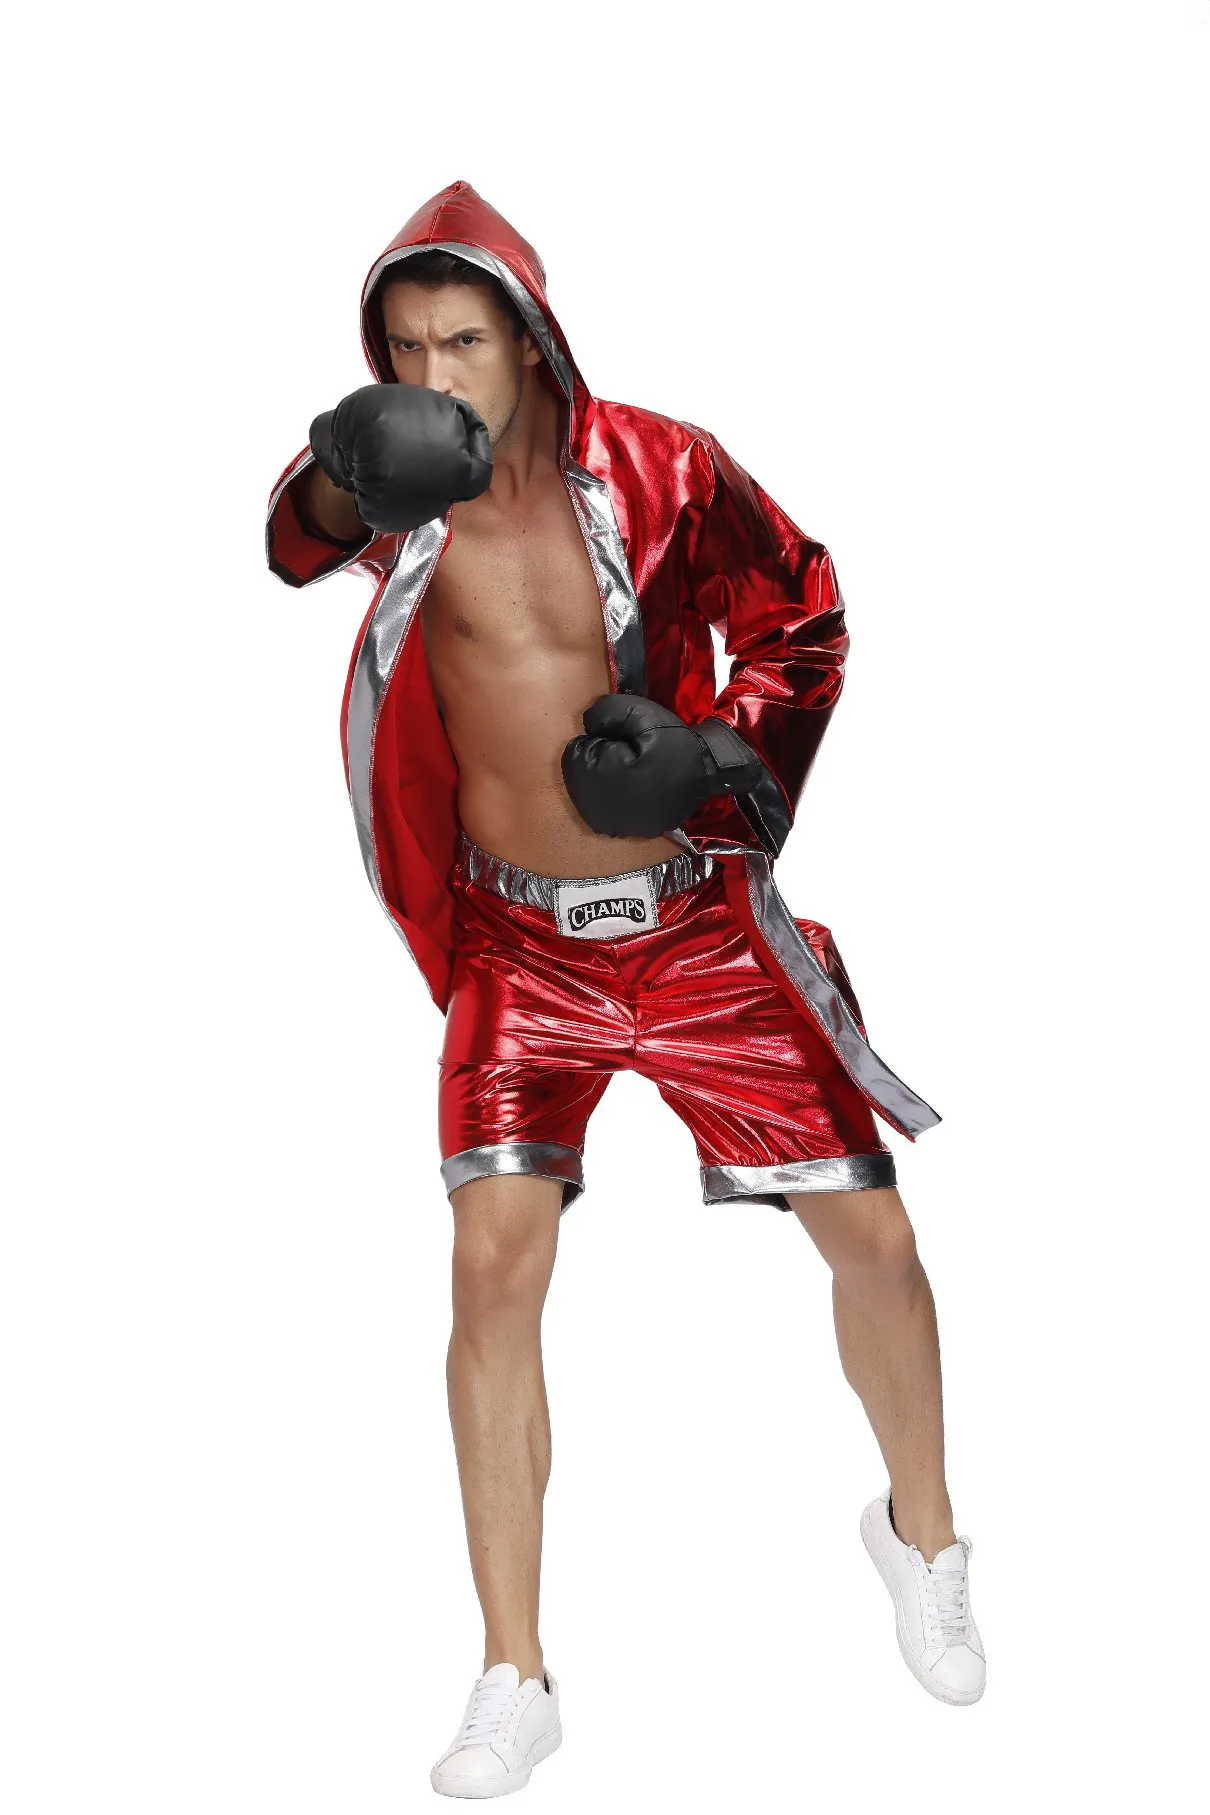 Мъжки червен костюм боксьор, дъждобран с качулка, роба, Съкратен с къси панталони, Дрехи за бокс от филми, Униформи за cosplay на Хелоуин за мъже